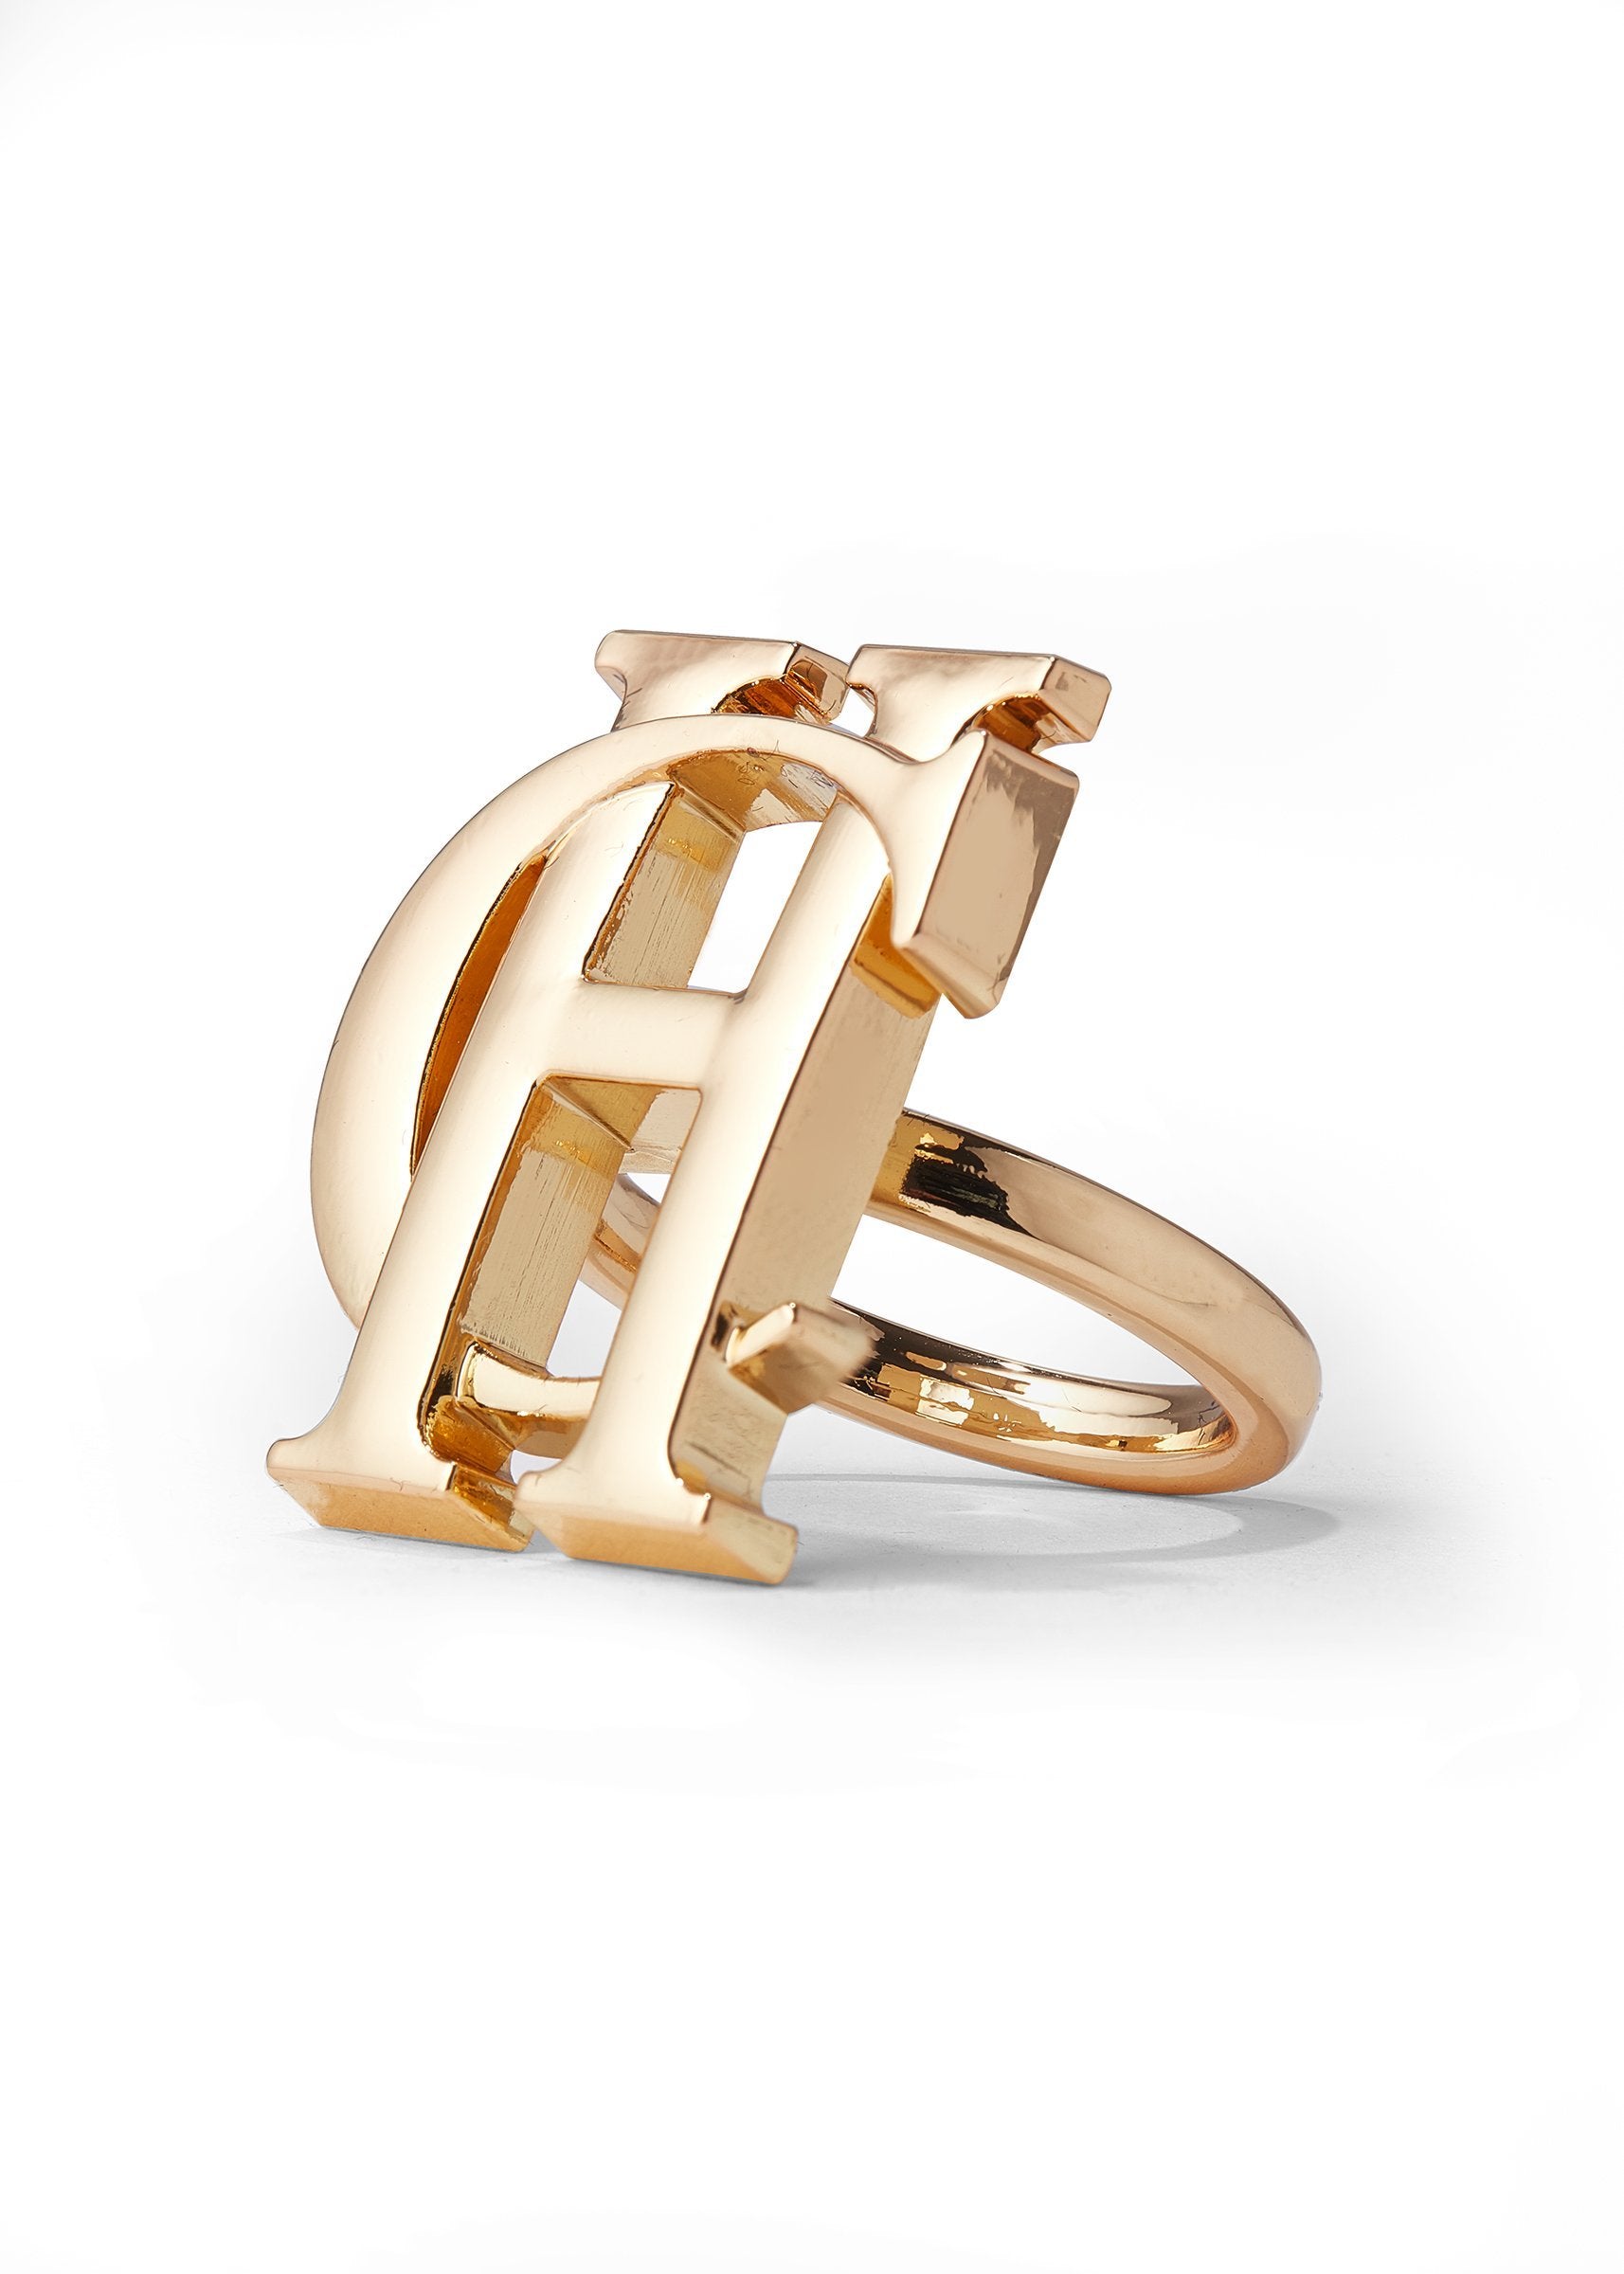 Gold Scarf Clip Gold Scarf Ring Scarf Clip Scarf Ring -  UK